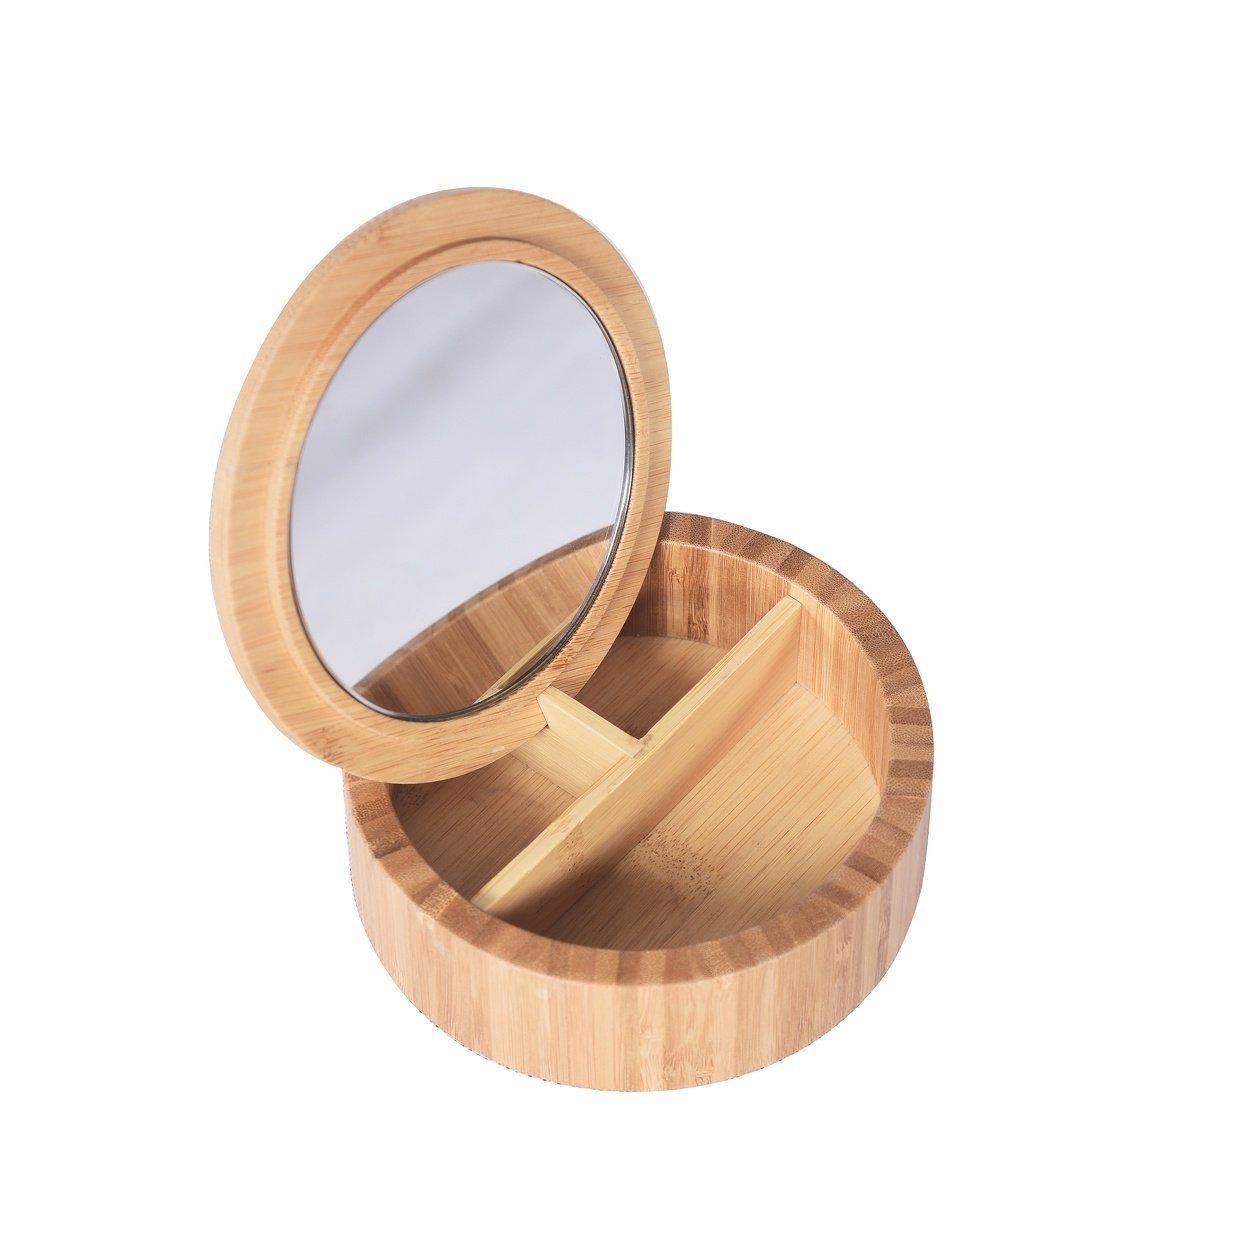 spirella Make-Up Organizer ALAIS, Aufbewahrungsbox für Schmuck, Kosmetik und Schminkutensilien, Bambus, rund, mit Deckel, innenliegender Spiegel, 3 Aufbewahrungsfächer, 13,5 x 5 cm, Farbe natur